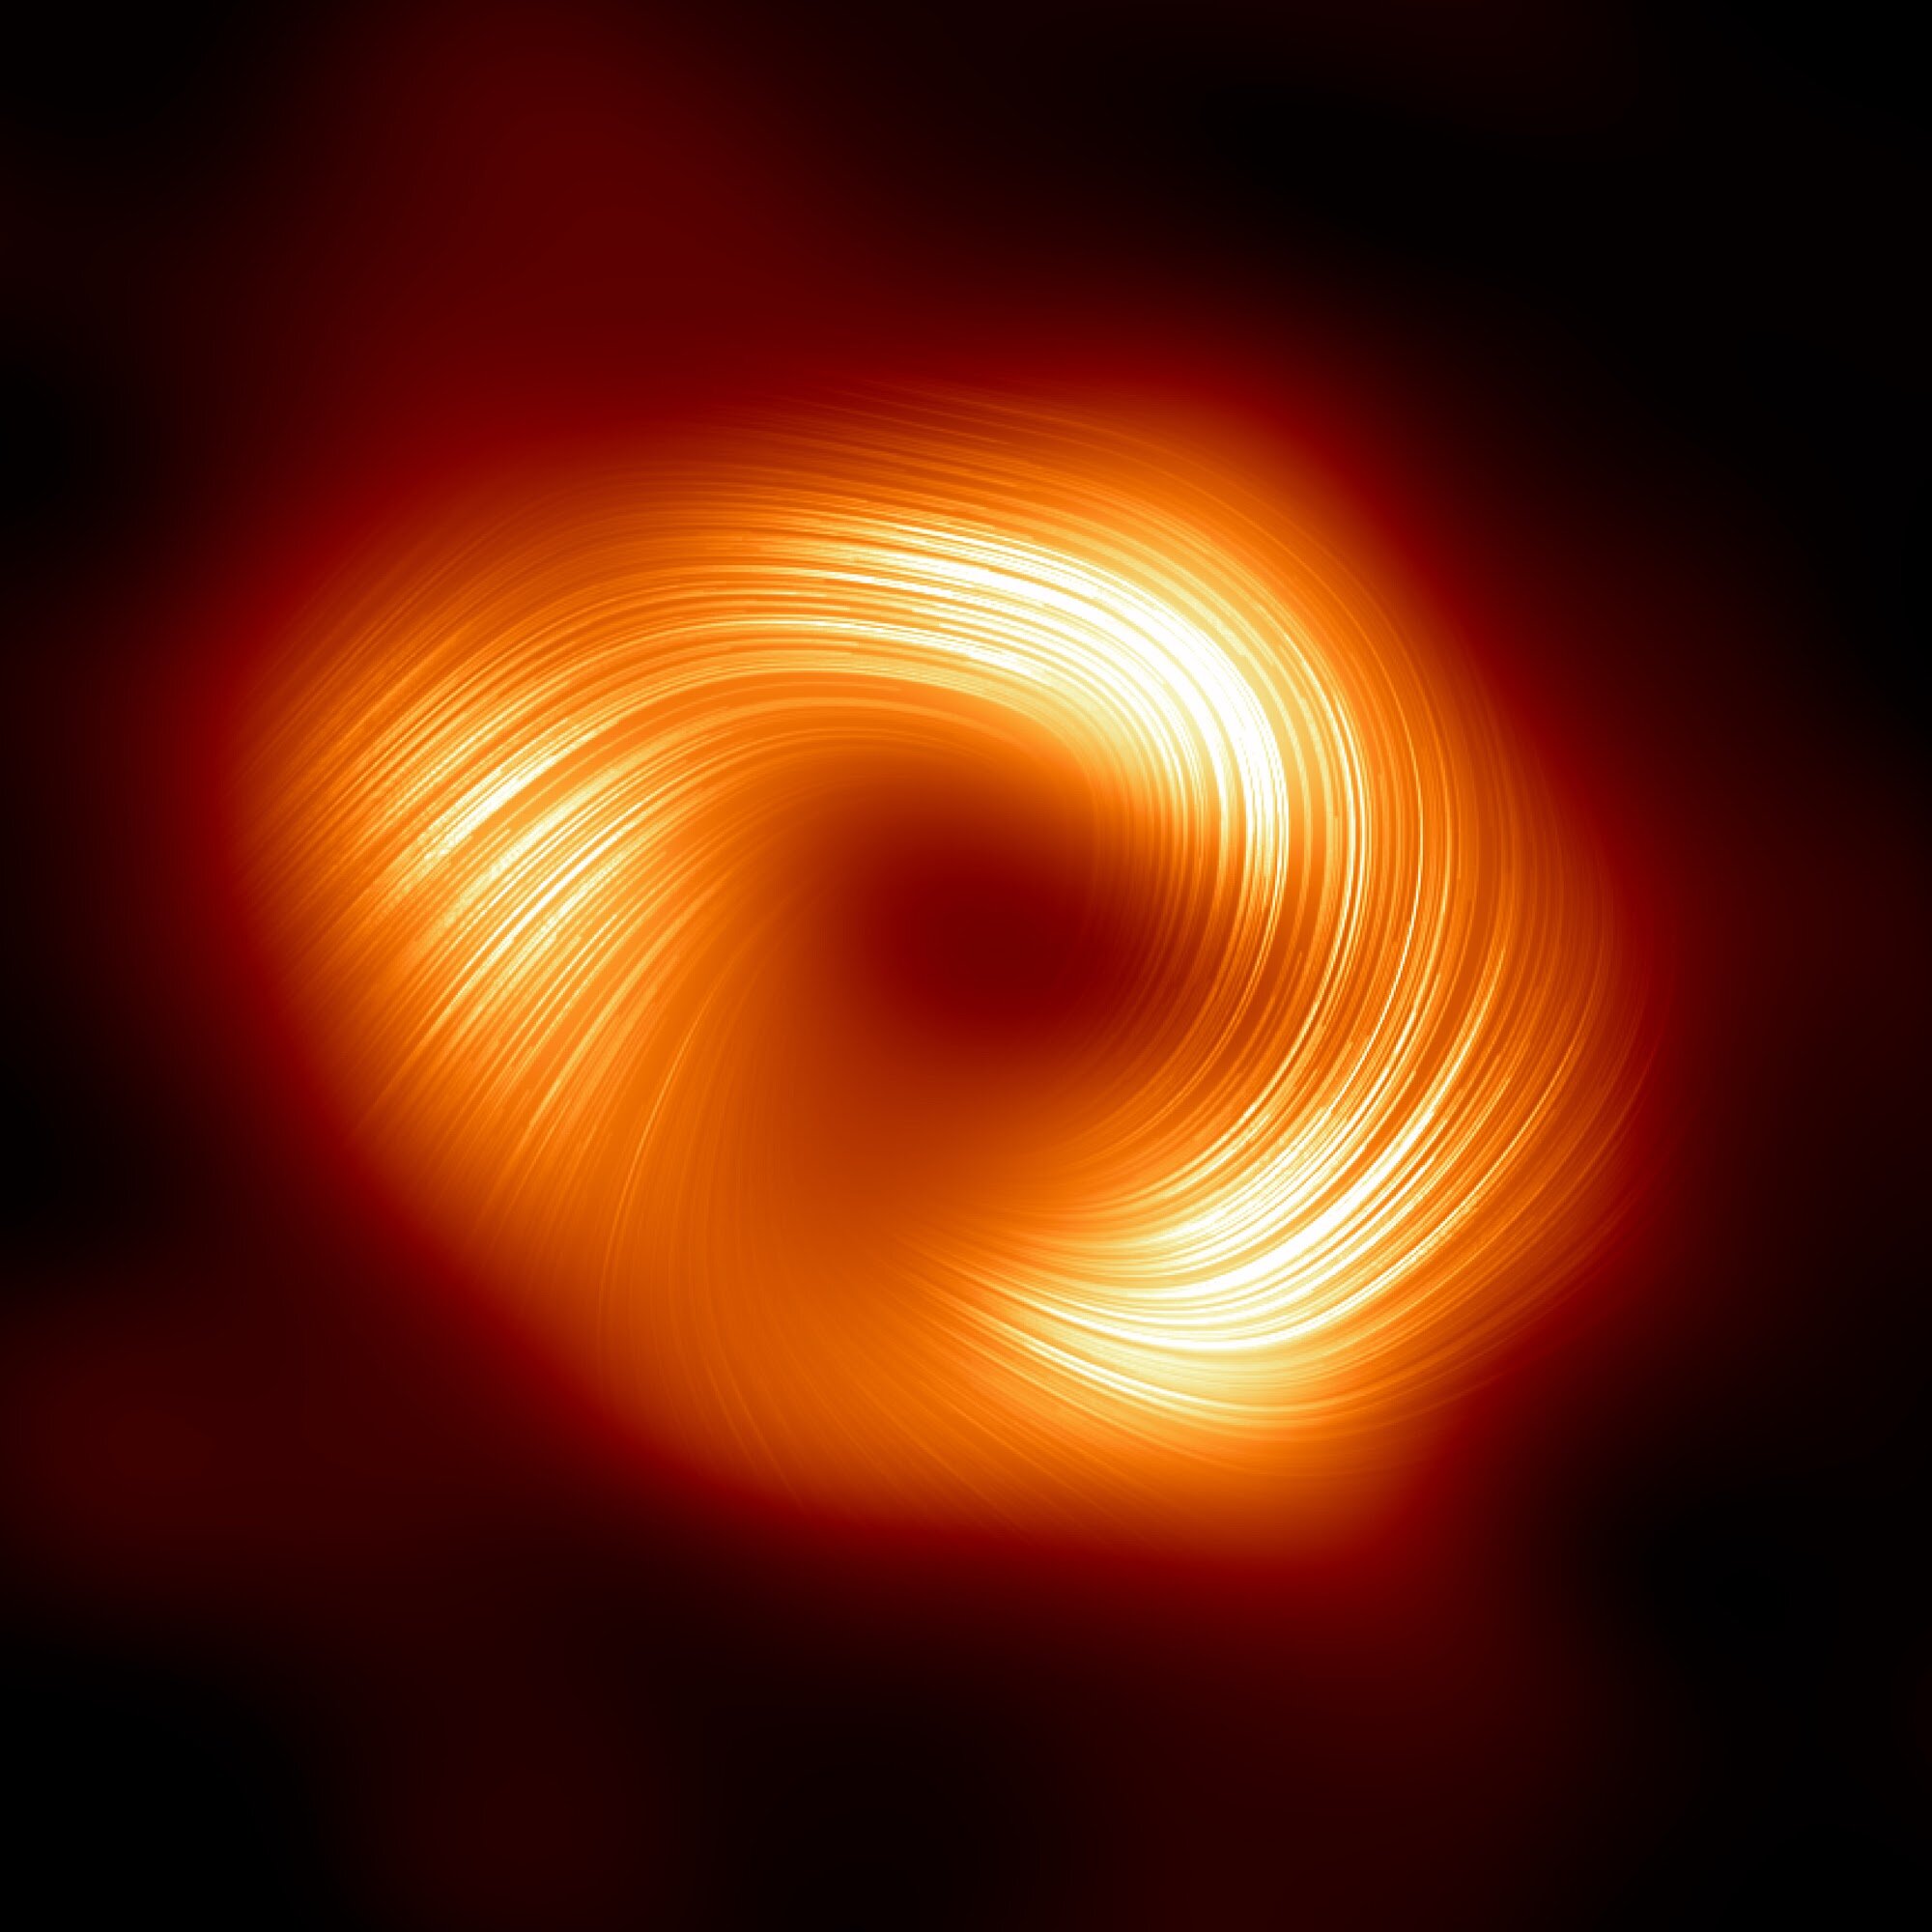 Астрономи детектују јака магнетна поља која се таласају на ивици централне црне рупе Млечног пута